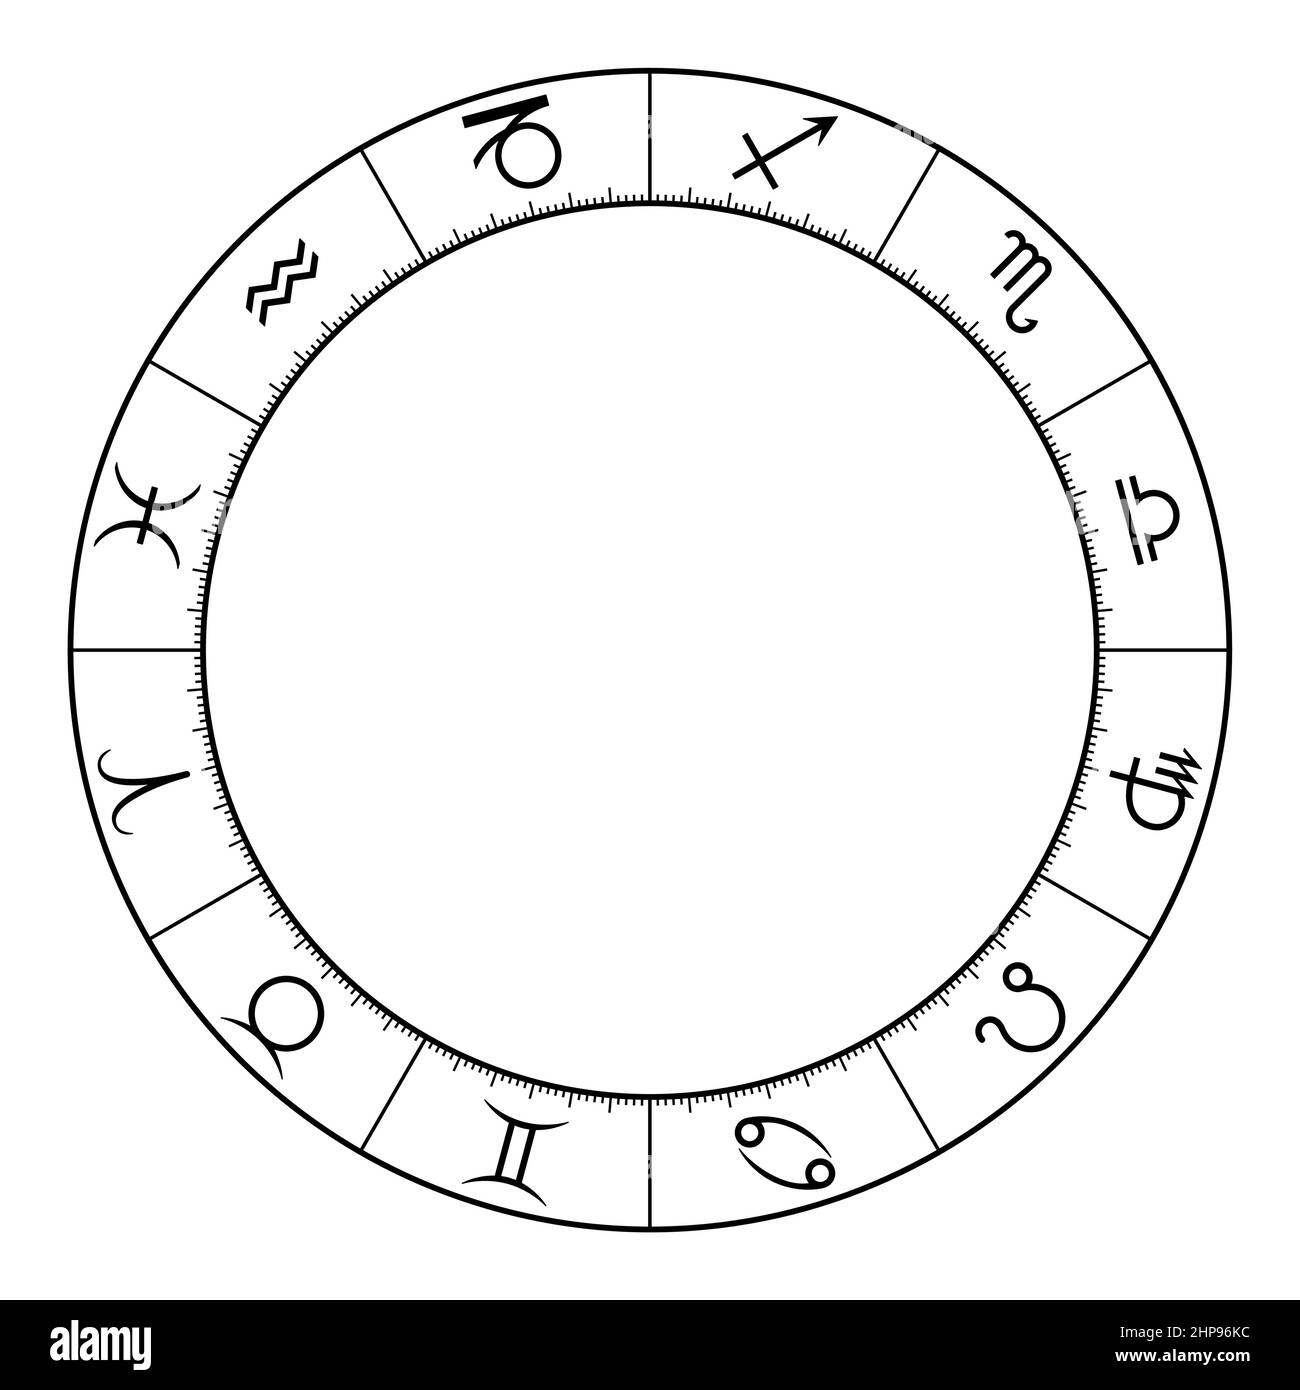 Cerchio zodiaco, che mostra dodici segni stellari, utilizzato in astrologia oroscopica Illustrazione Vettoriale